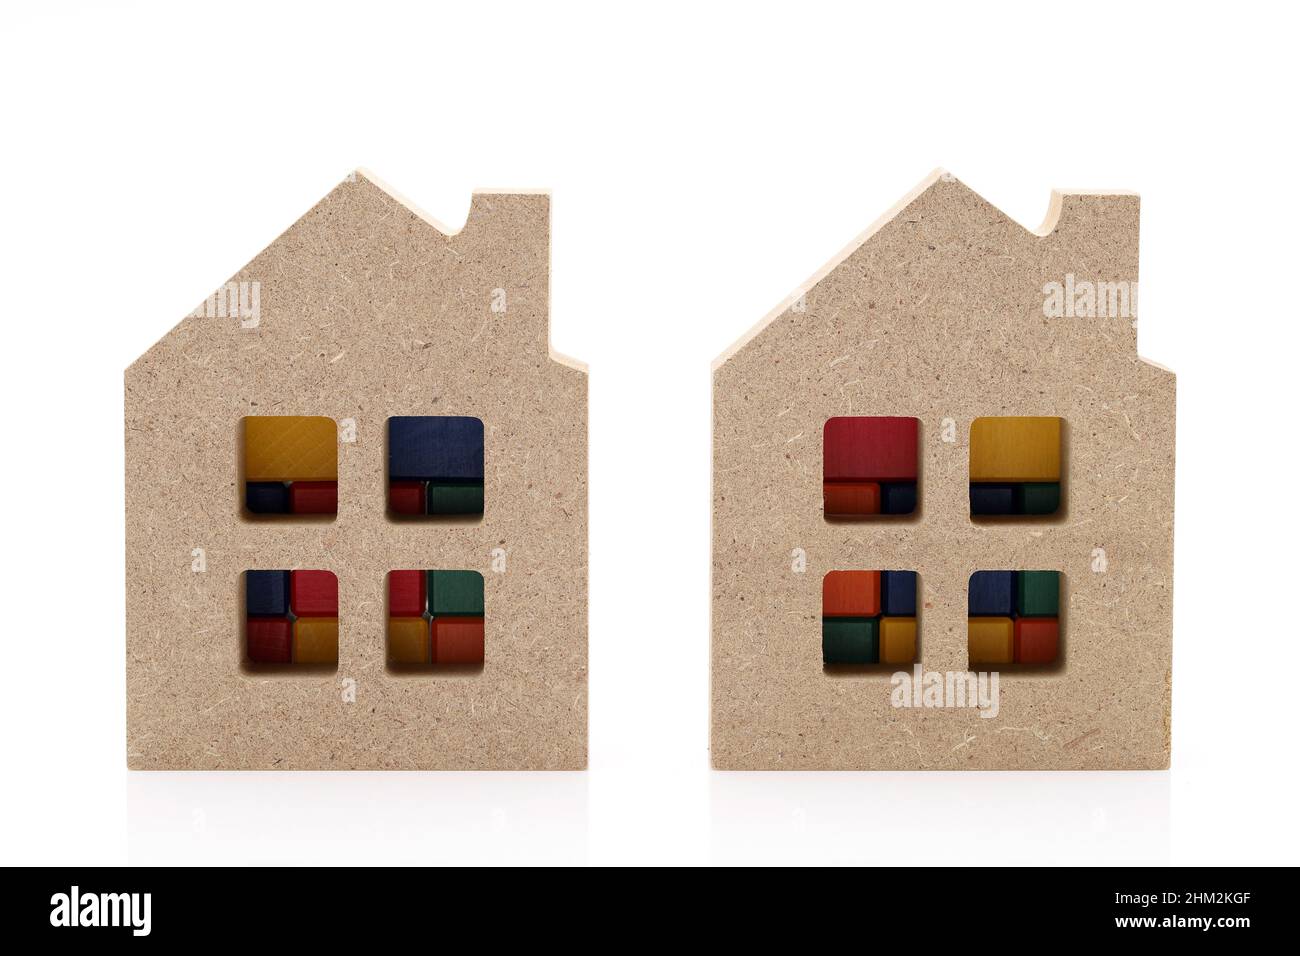 piccola casa giocattolo in legno isolata su sfondo bianco Foto Stock